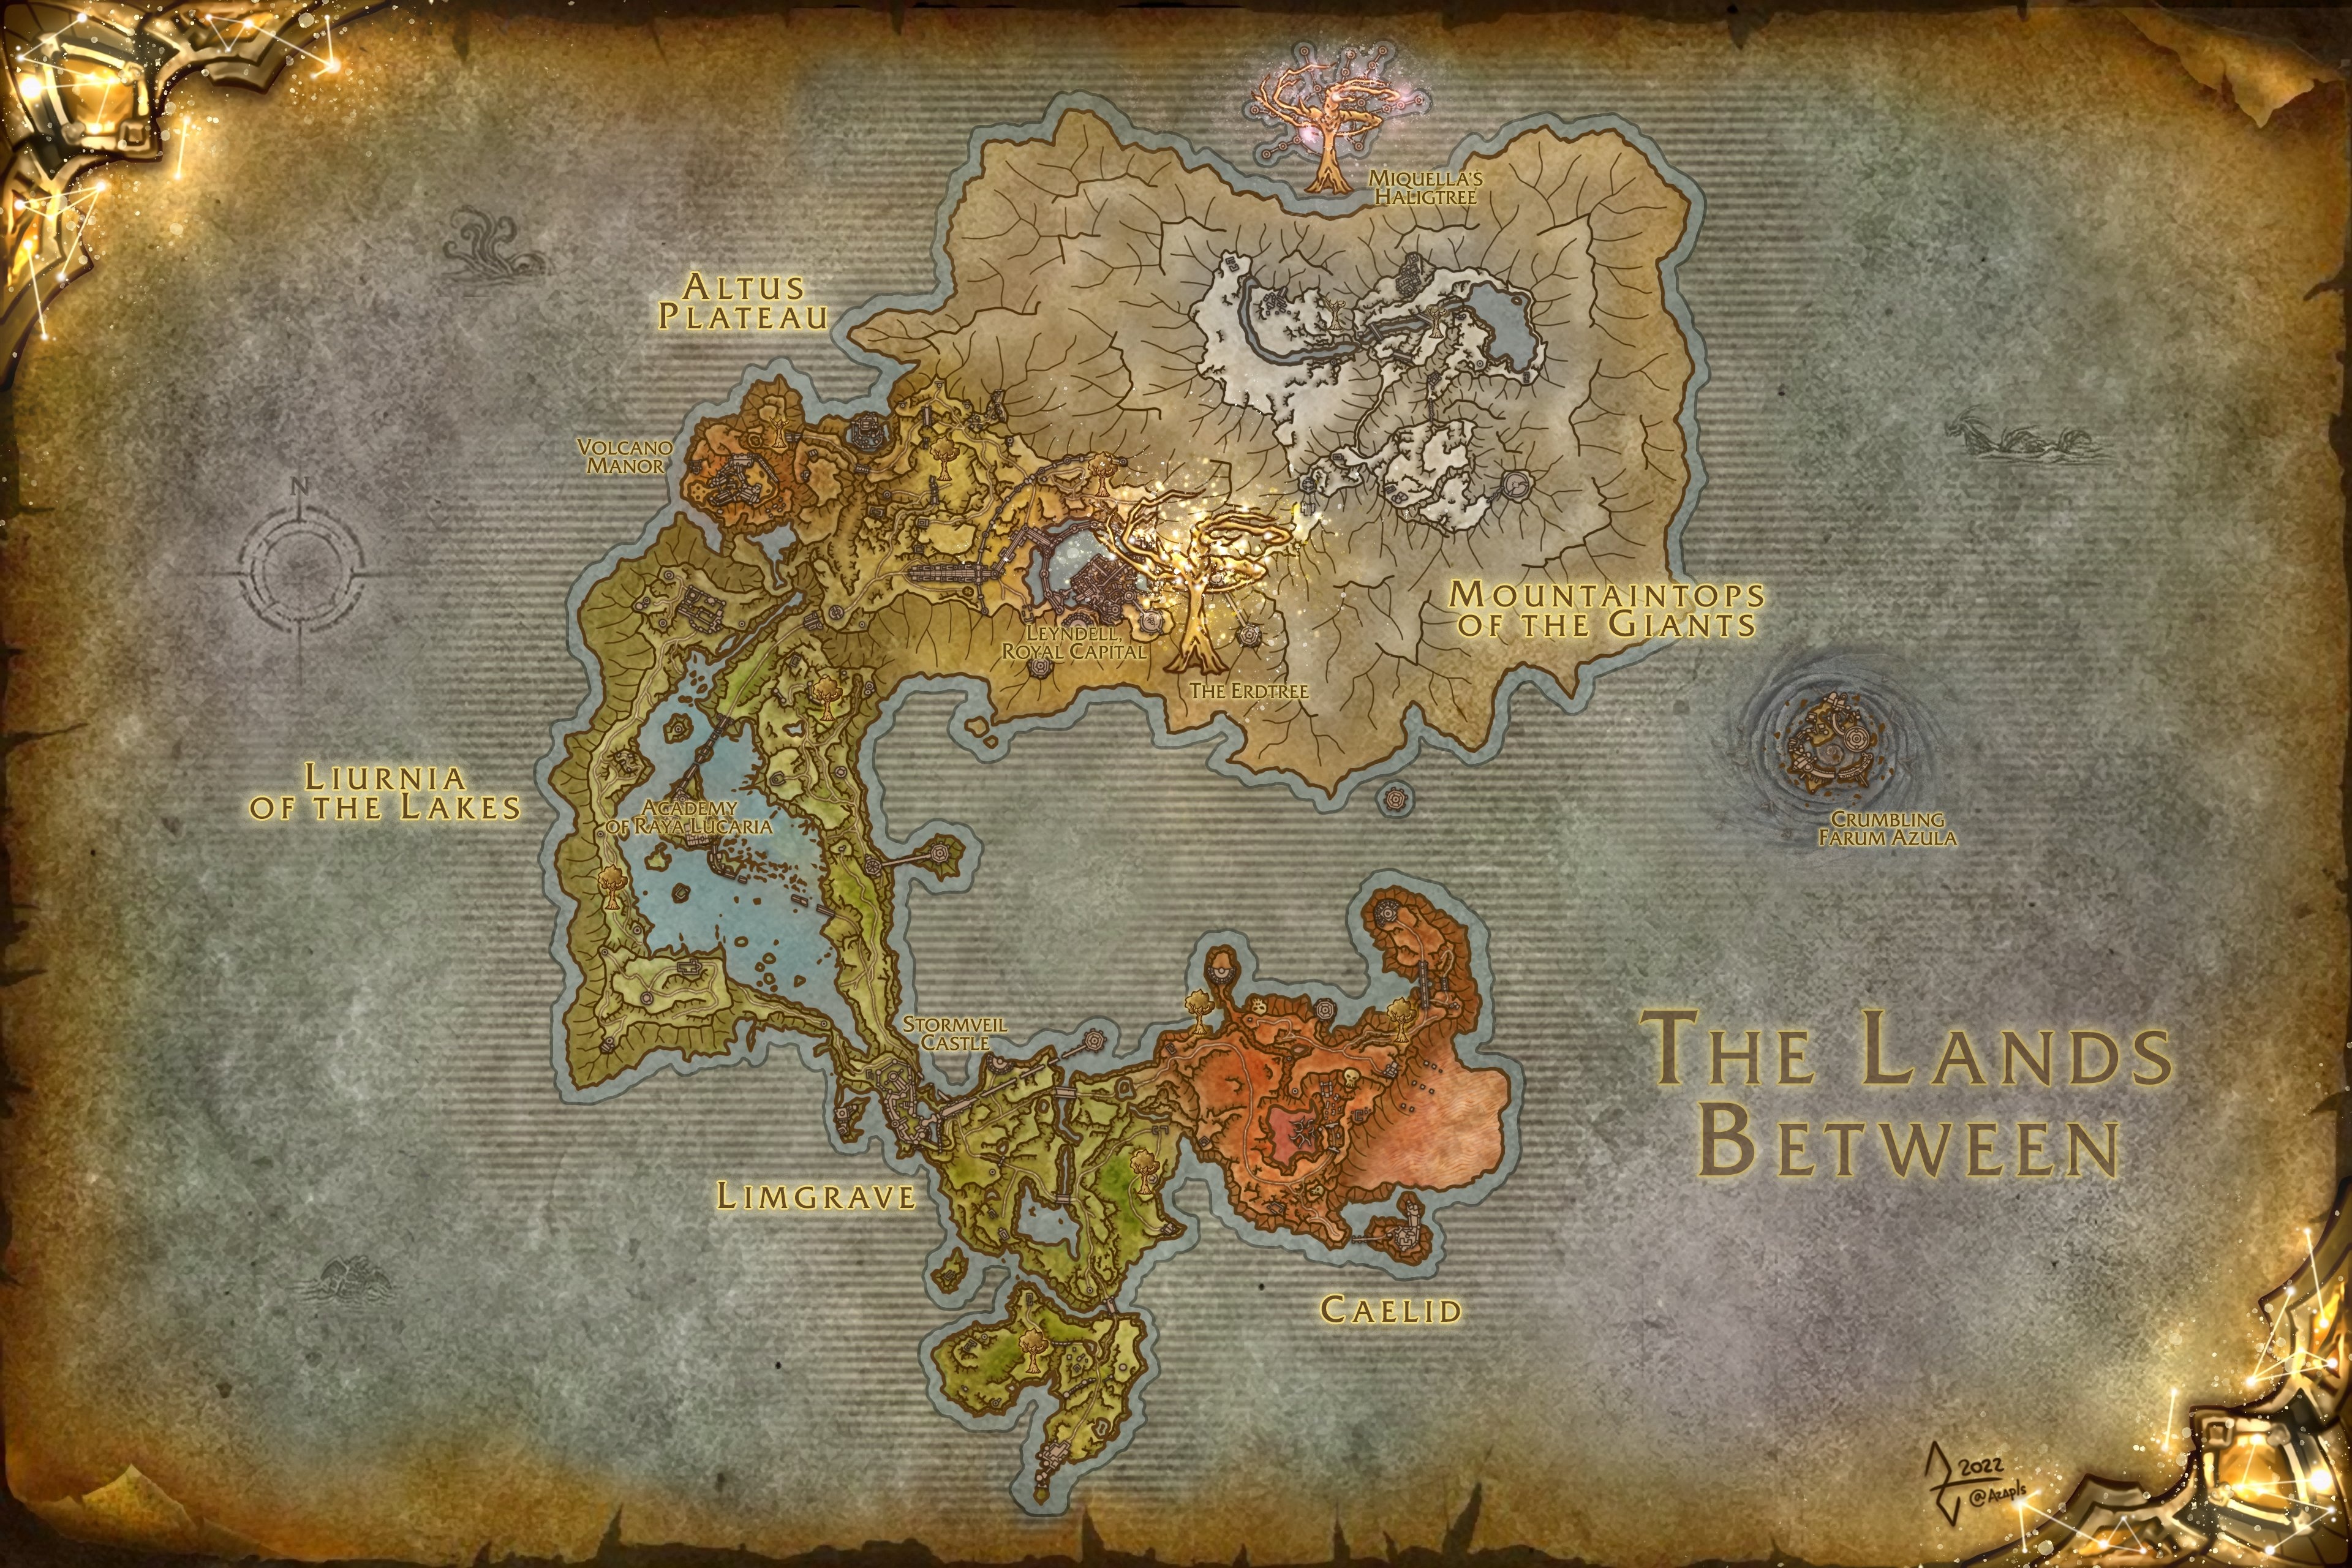 Bạn có thích kiểu bản đồ trong World of Warcraft? Hãy tìm hiểu về bản đồ Elden Ring kiểu World of Warcraft đẹp mắt và chính xác đến từng chi tiết. Nó sẽ giúp bạn tận hưởng một cách tối đa các trải nghiệm trên chiếc máy tính của mình.